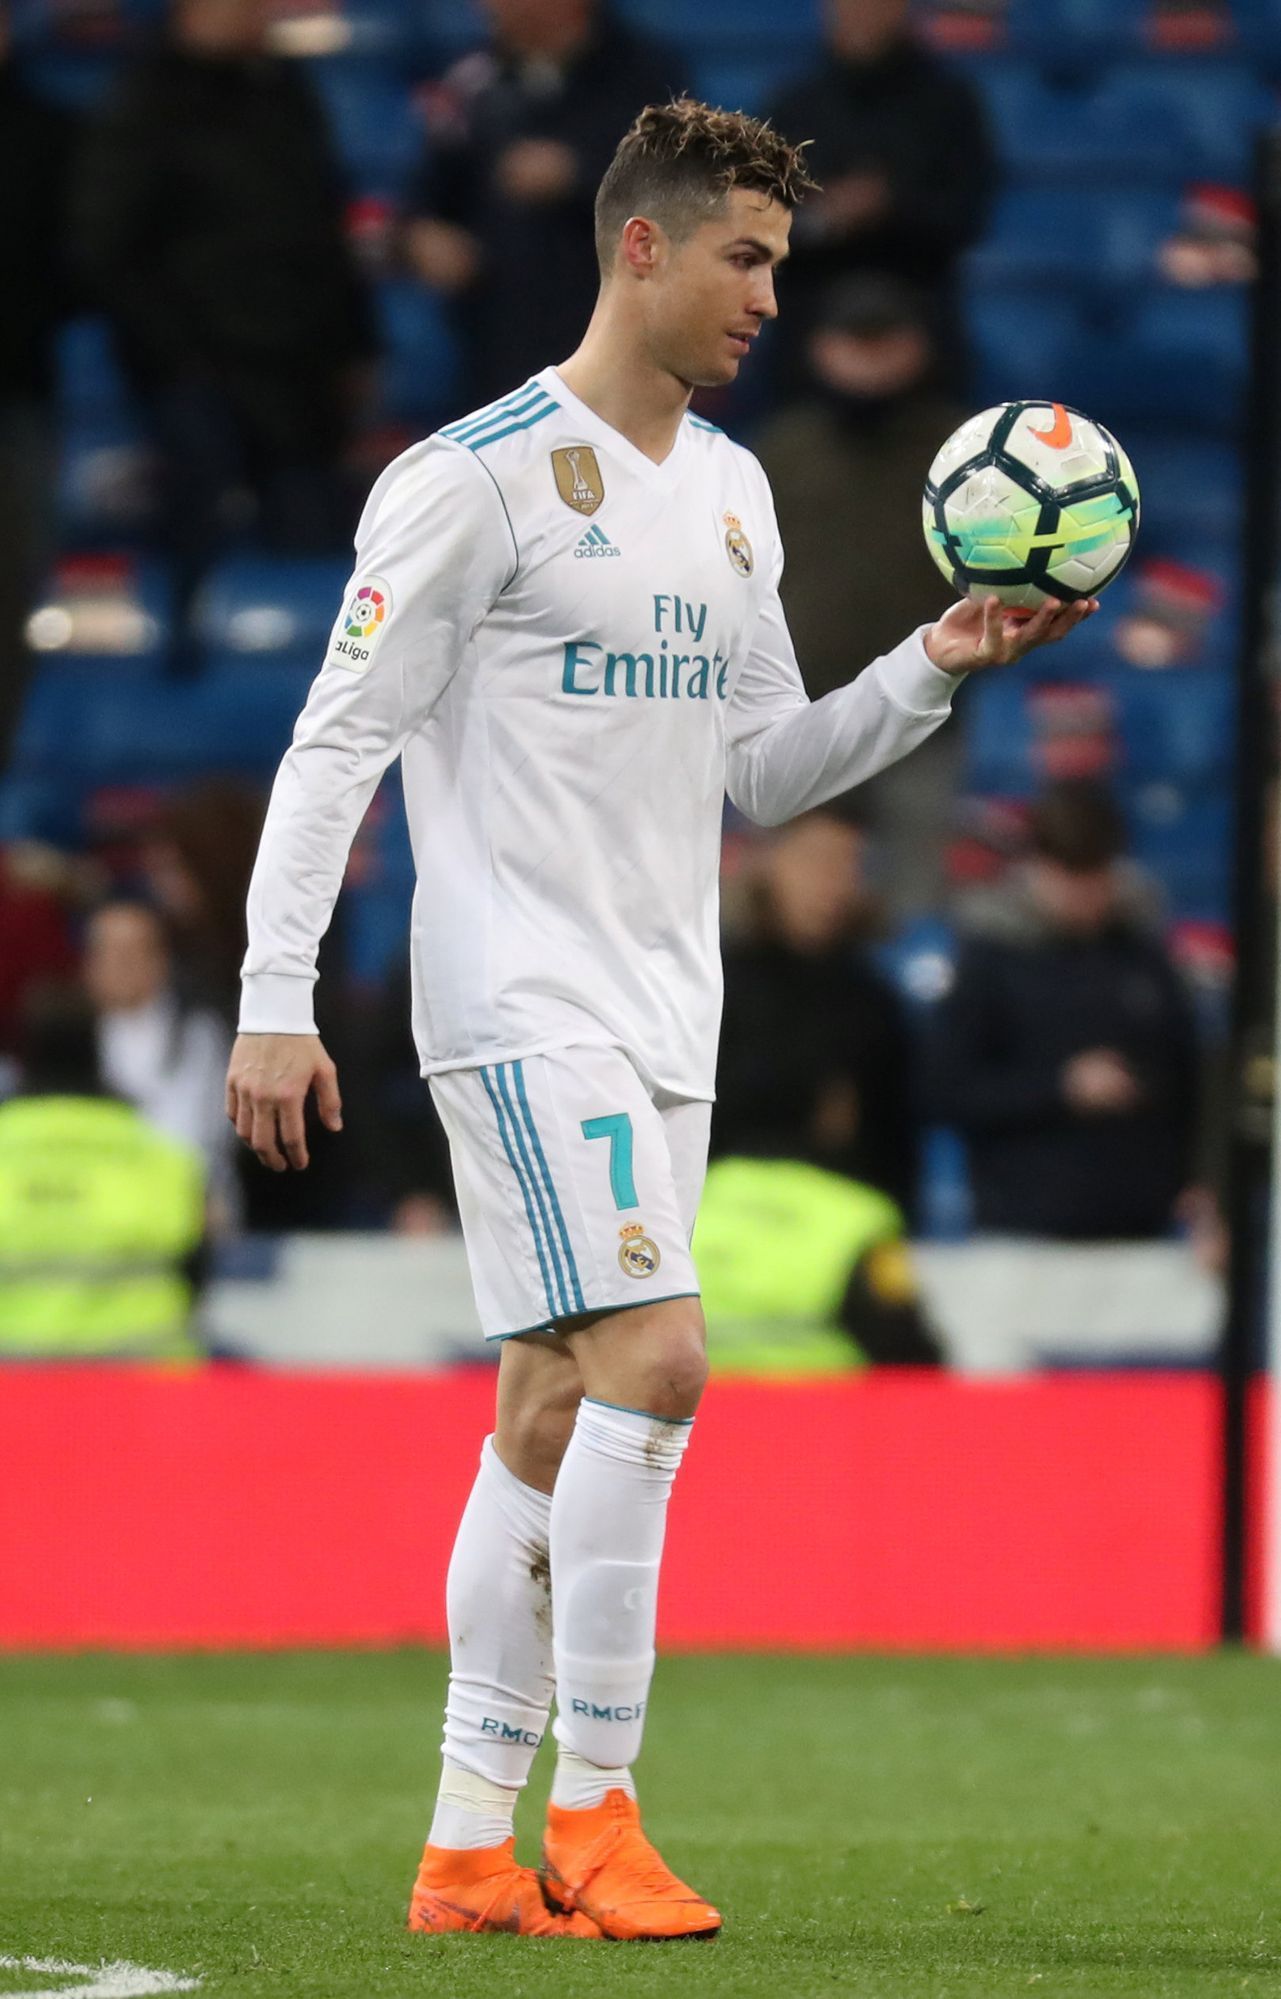 fotbal, španělská liga 2017/2018, Real Madrid - Girona (6:3), Cristiano Ronaldo po jednom ze svých čtyř gólů